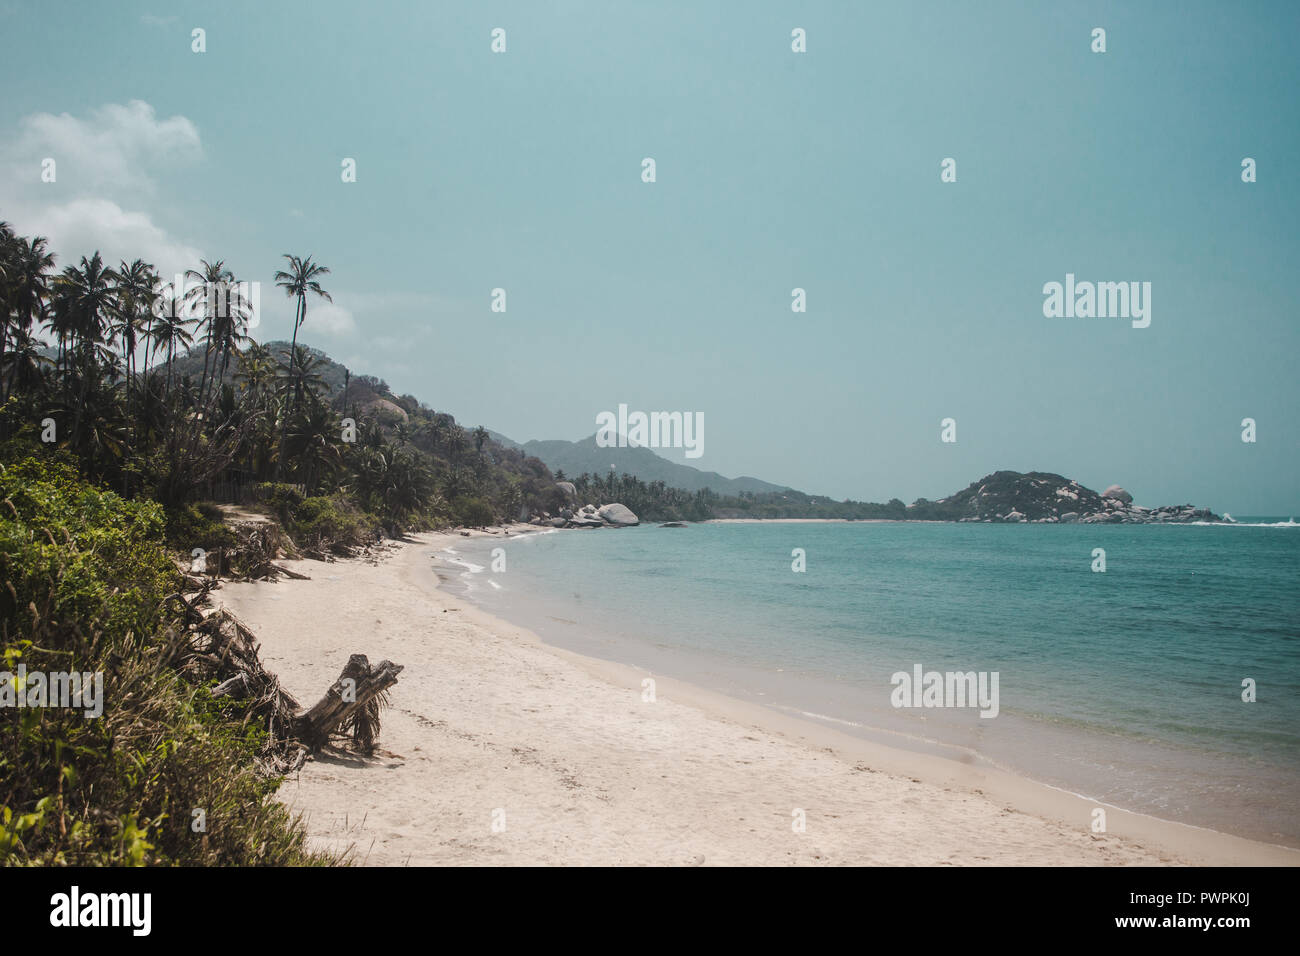 Unberührte weiße Sand Strand von Tayrona Nationalpark durch den Dschungel an der karibischen Küste Kolumbiens umgeben Stockfoto